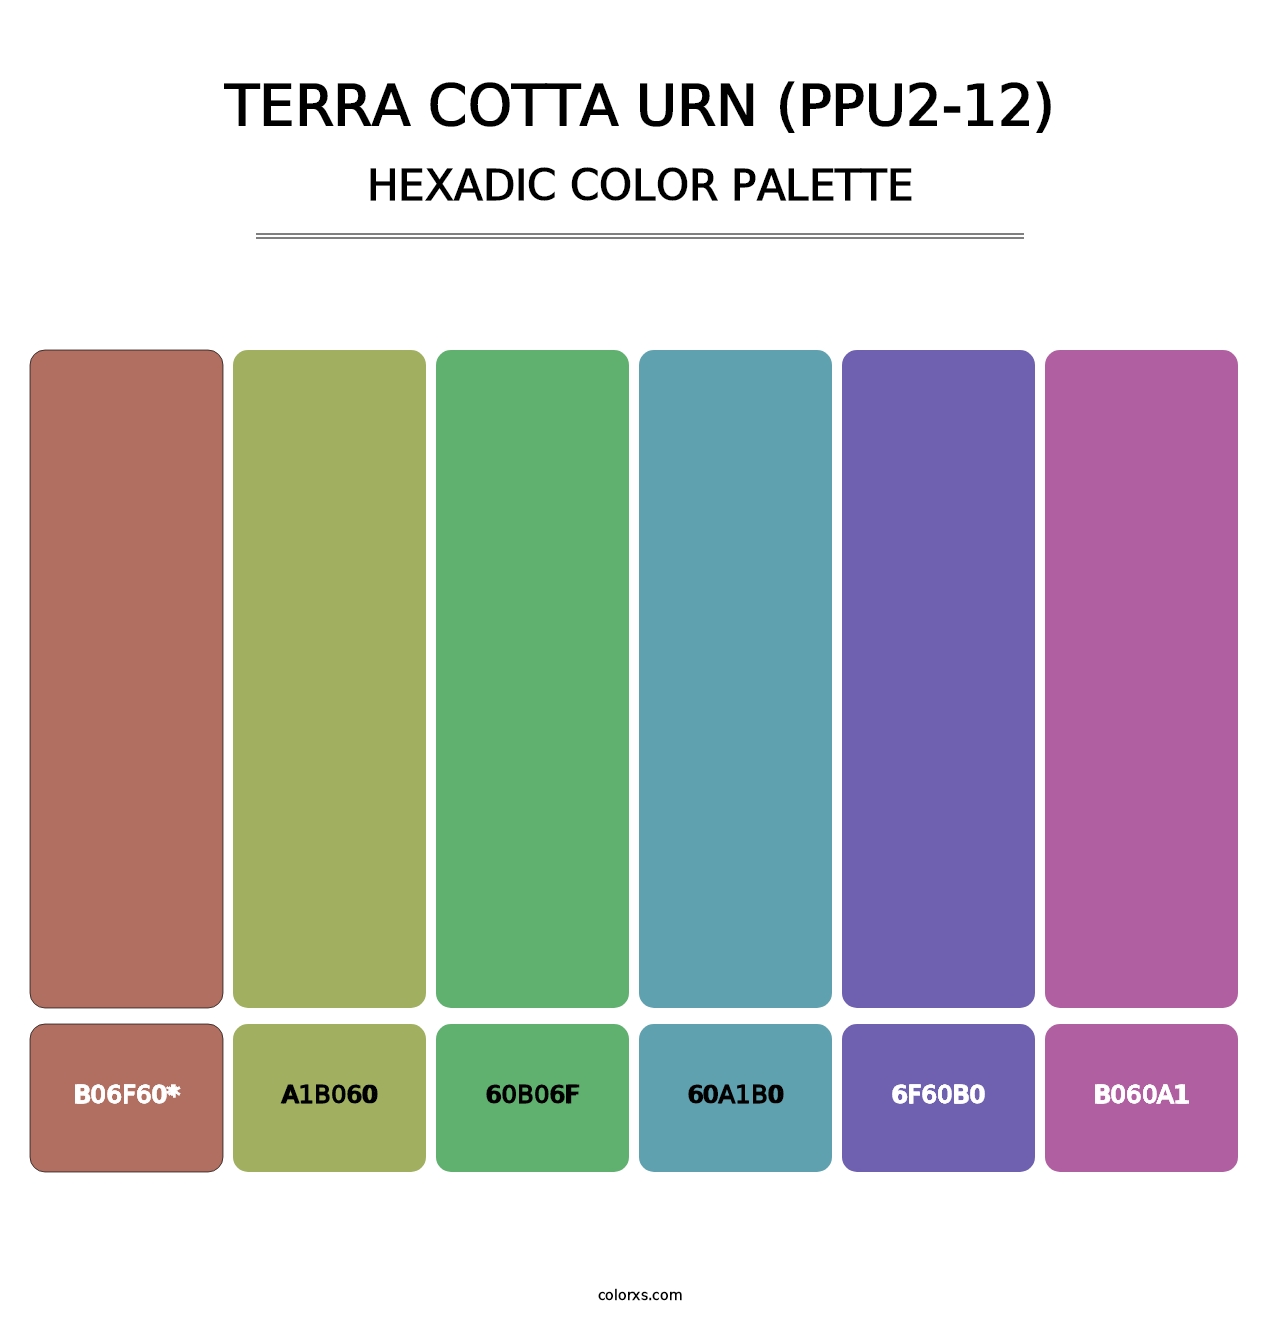 Terra Cotta Urn (PPU2-12) - Hexadic Color Palette